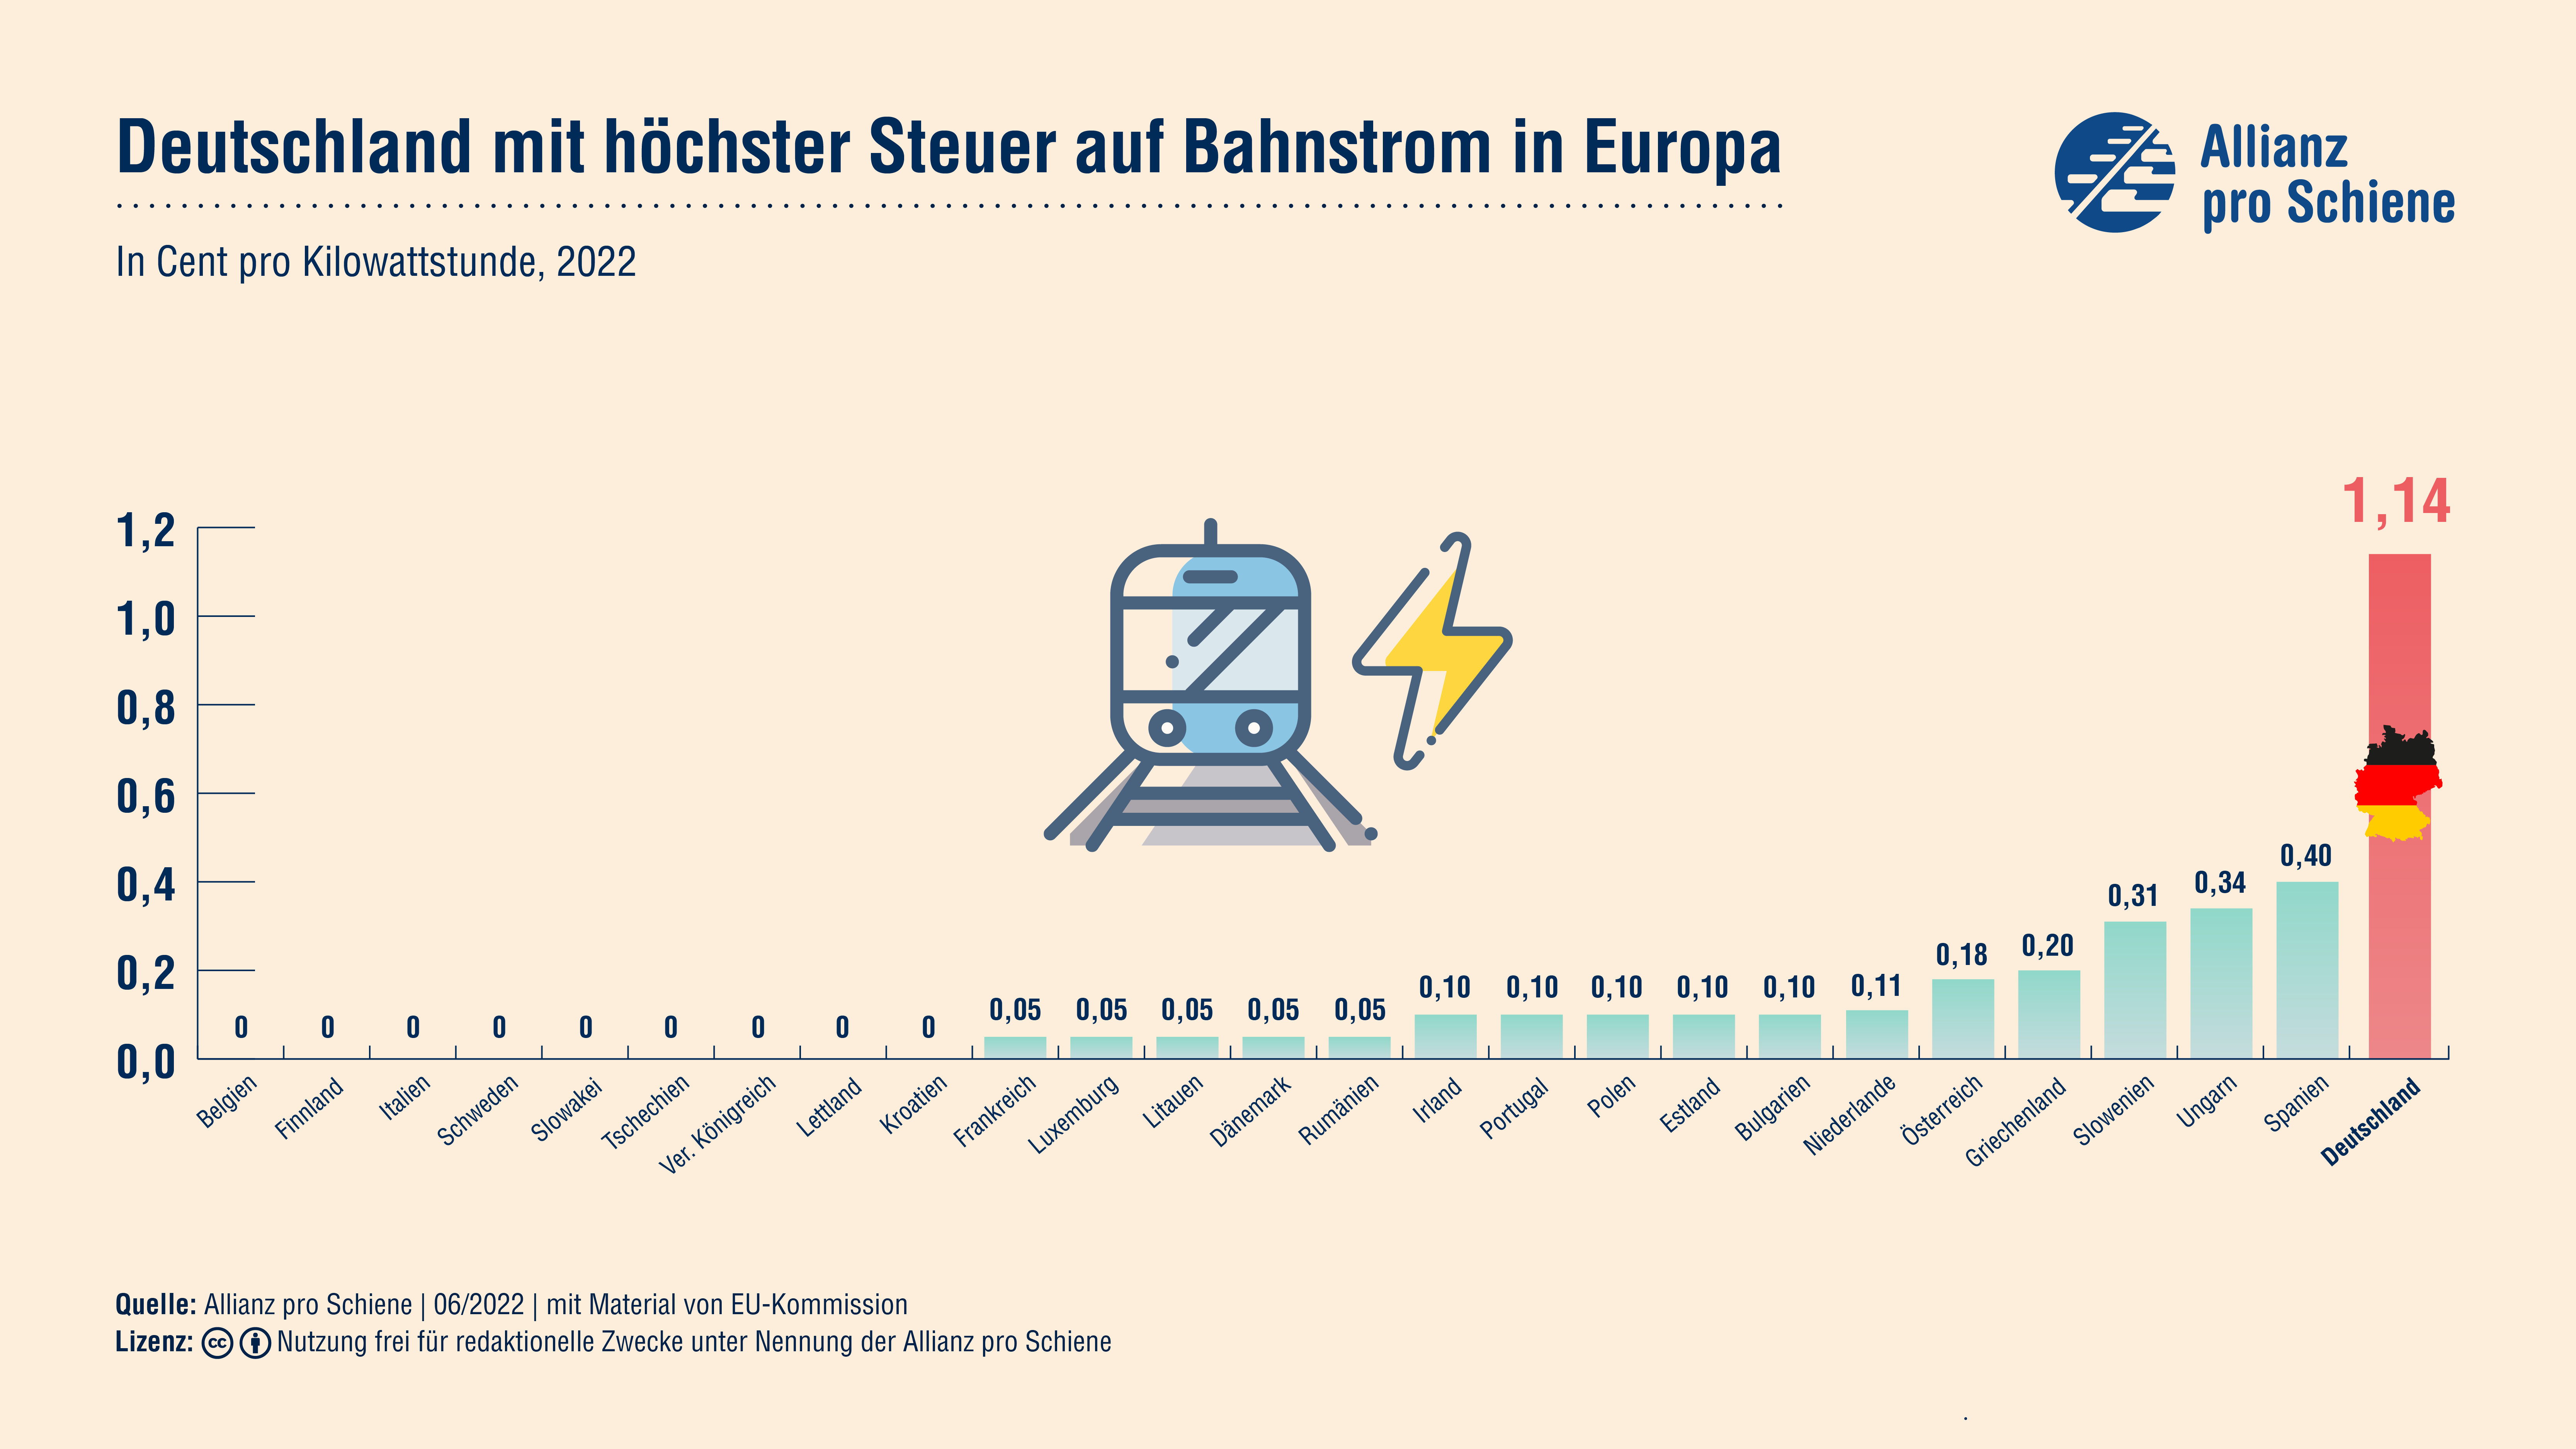 Deutschland erhebt mit 1,14ct pro kWh den höchsten Steuersatz auf Bahnstrom in Europa